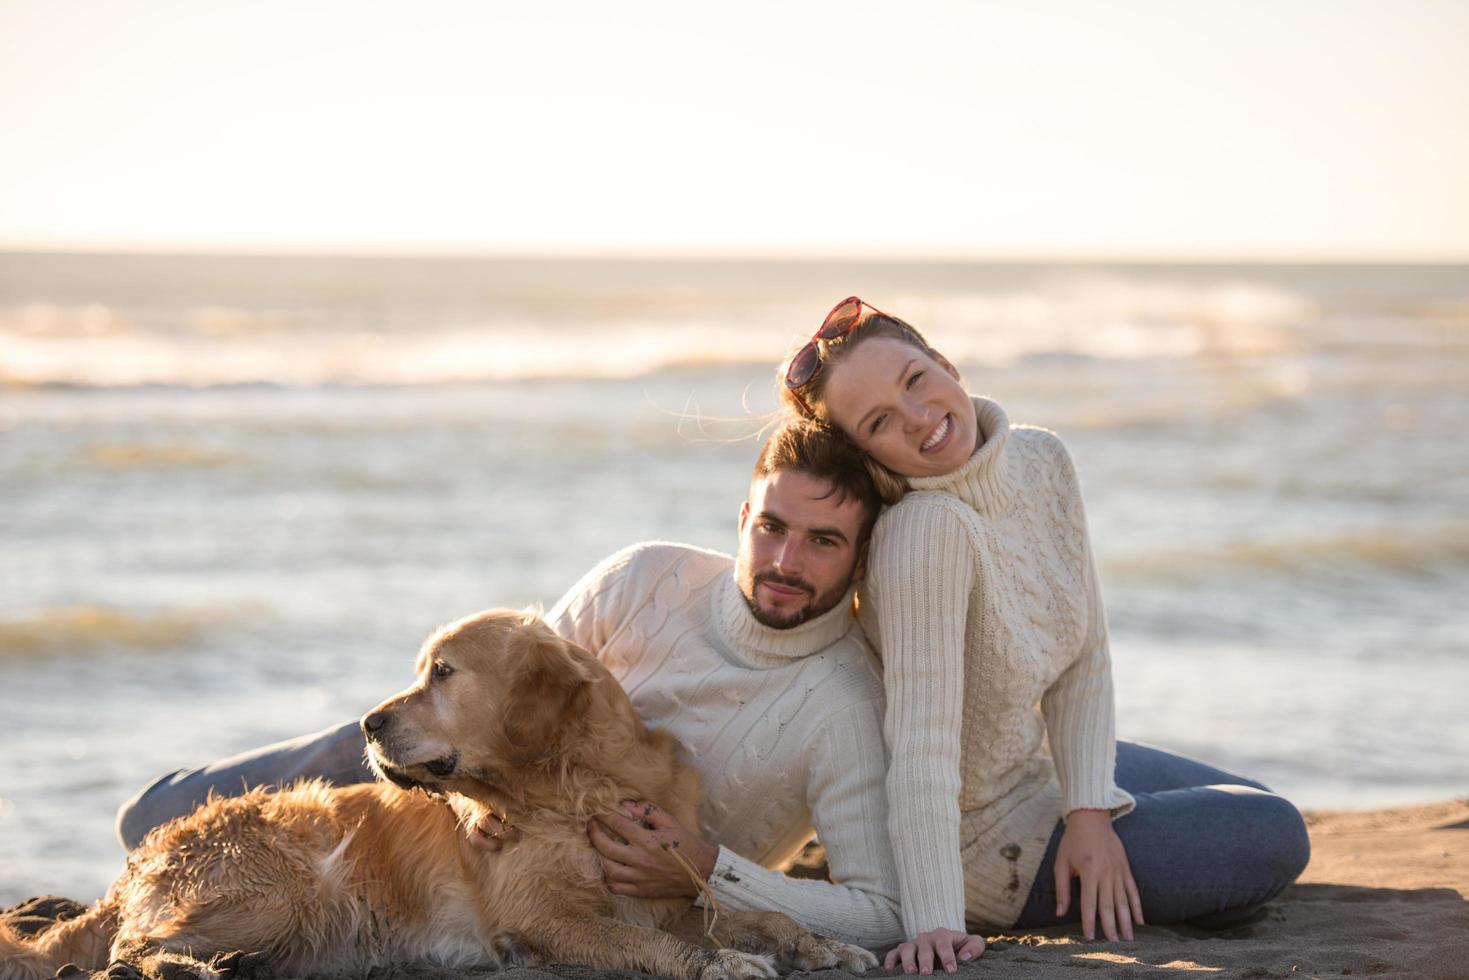 casal com cachorro aproveitando o tempo na praia foto